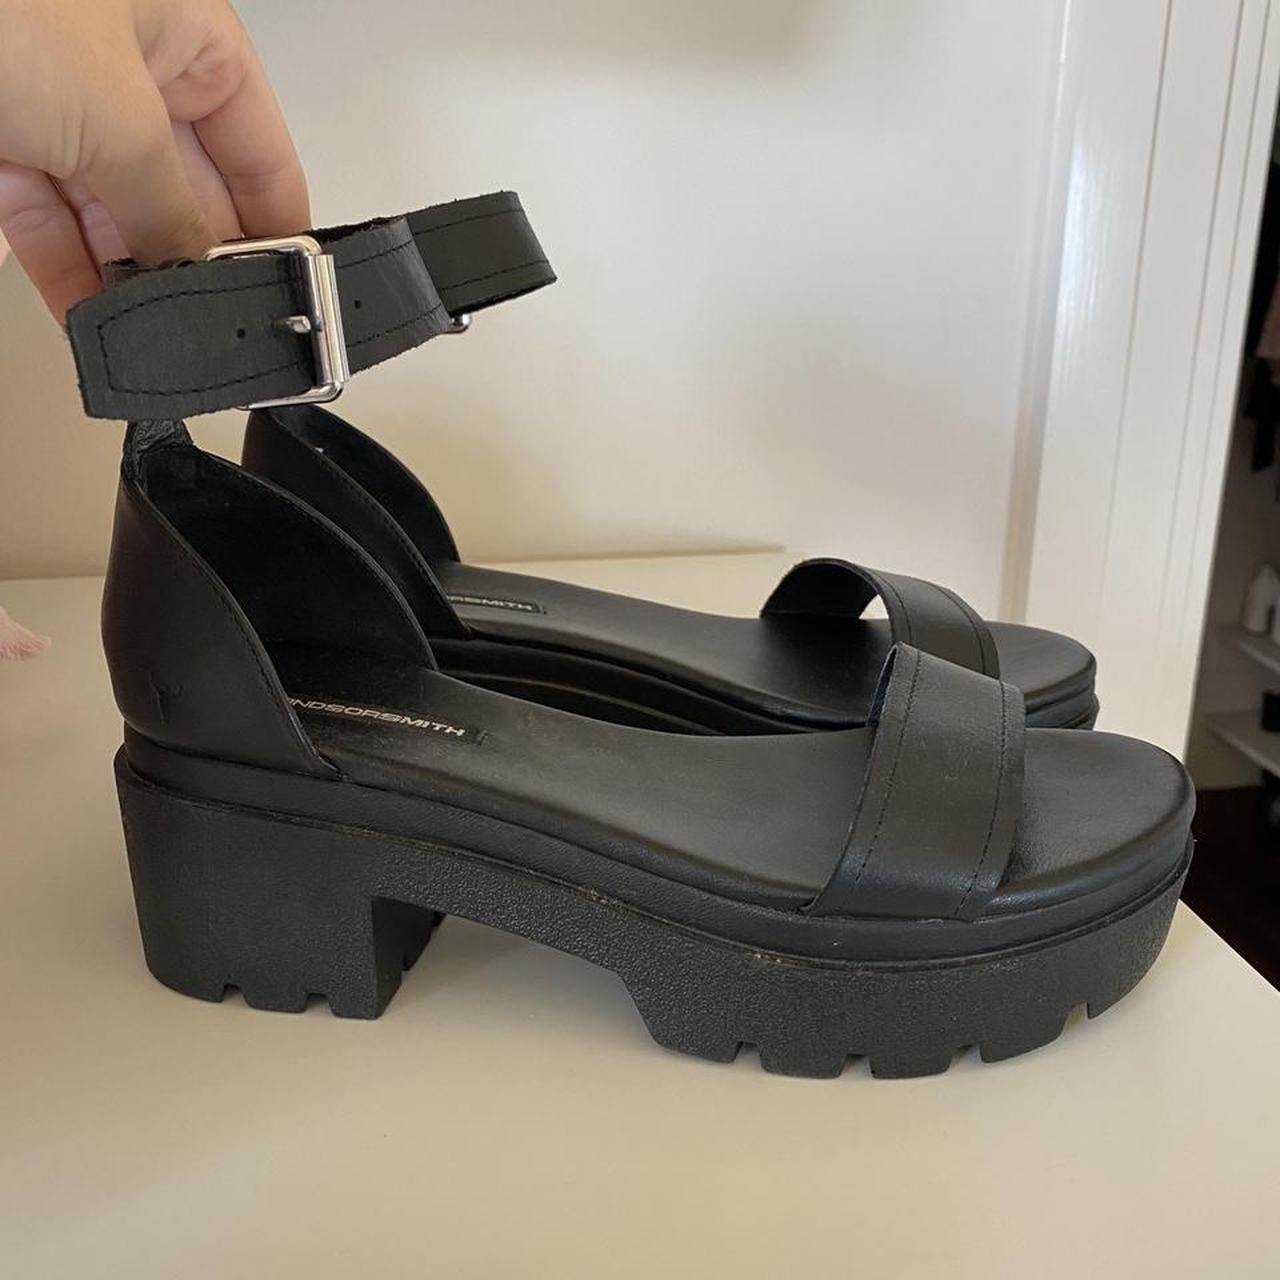 Selling Windsor smith platform sandal type... - Depop